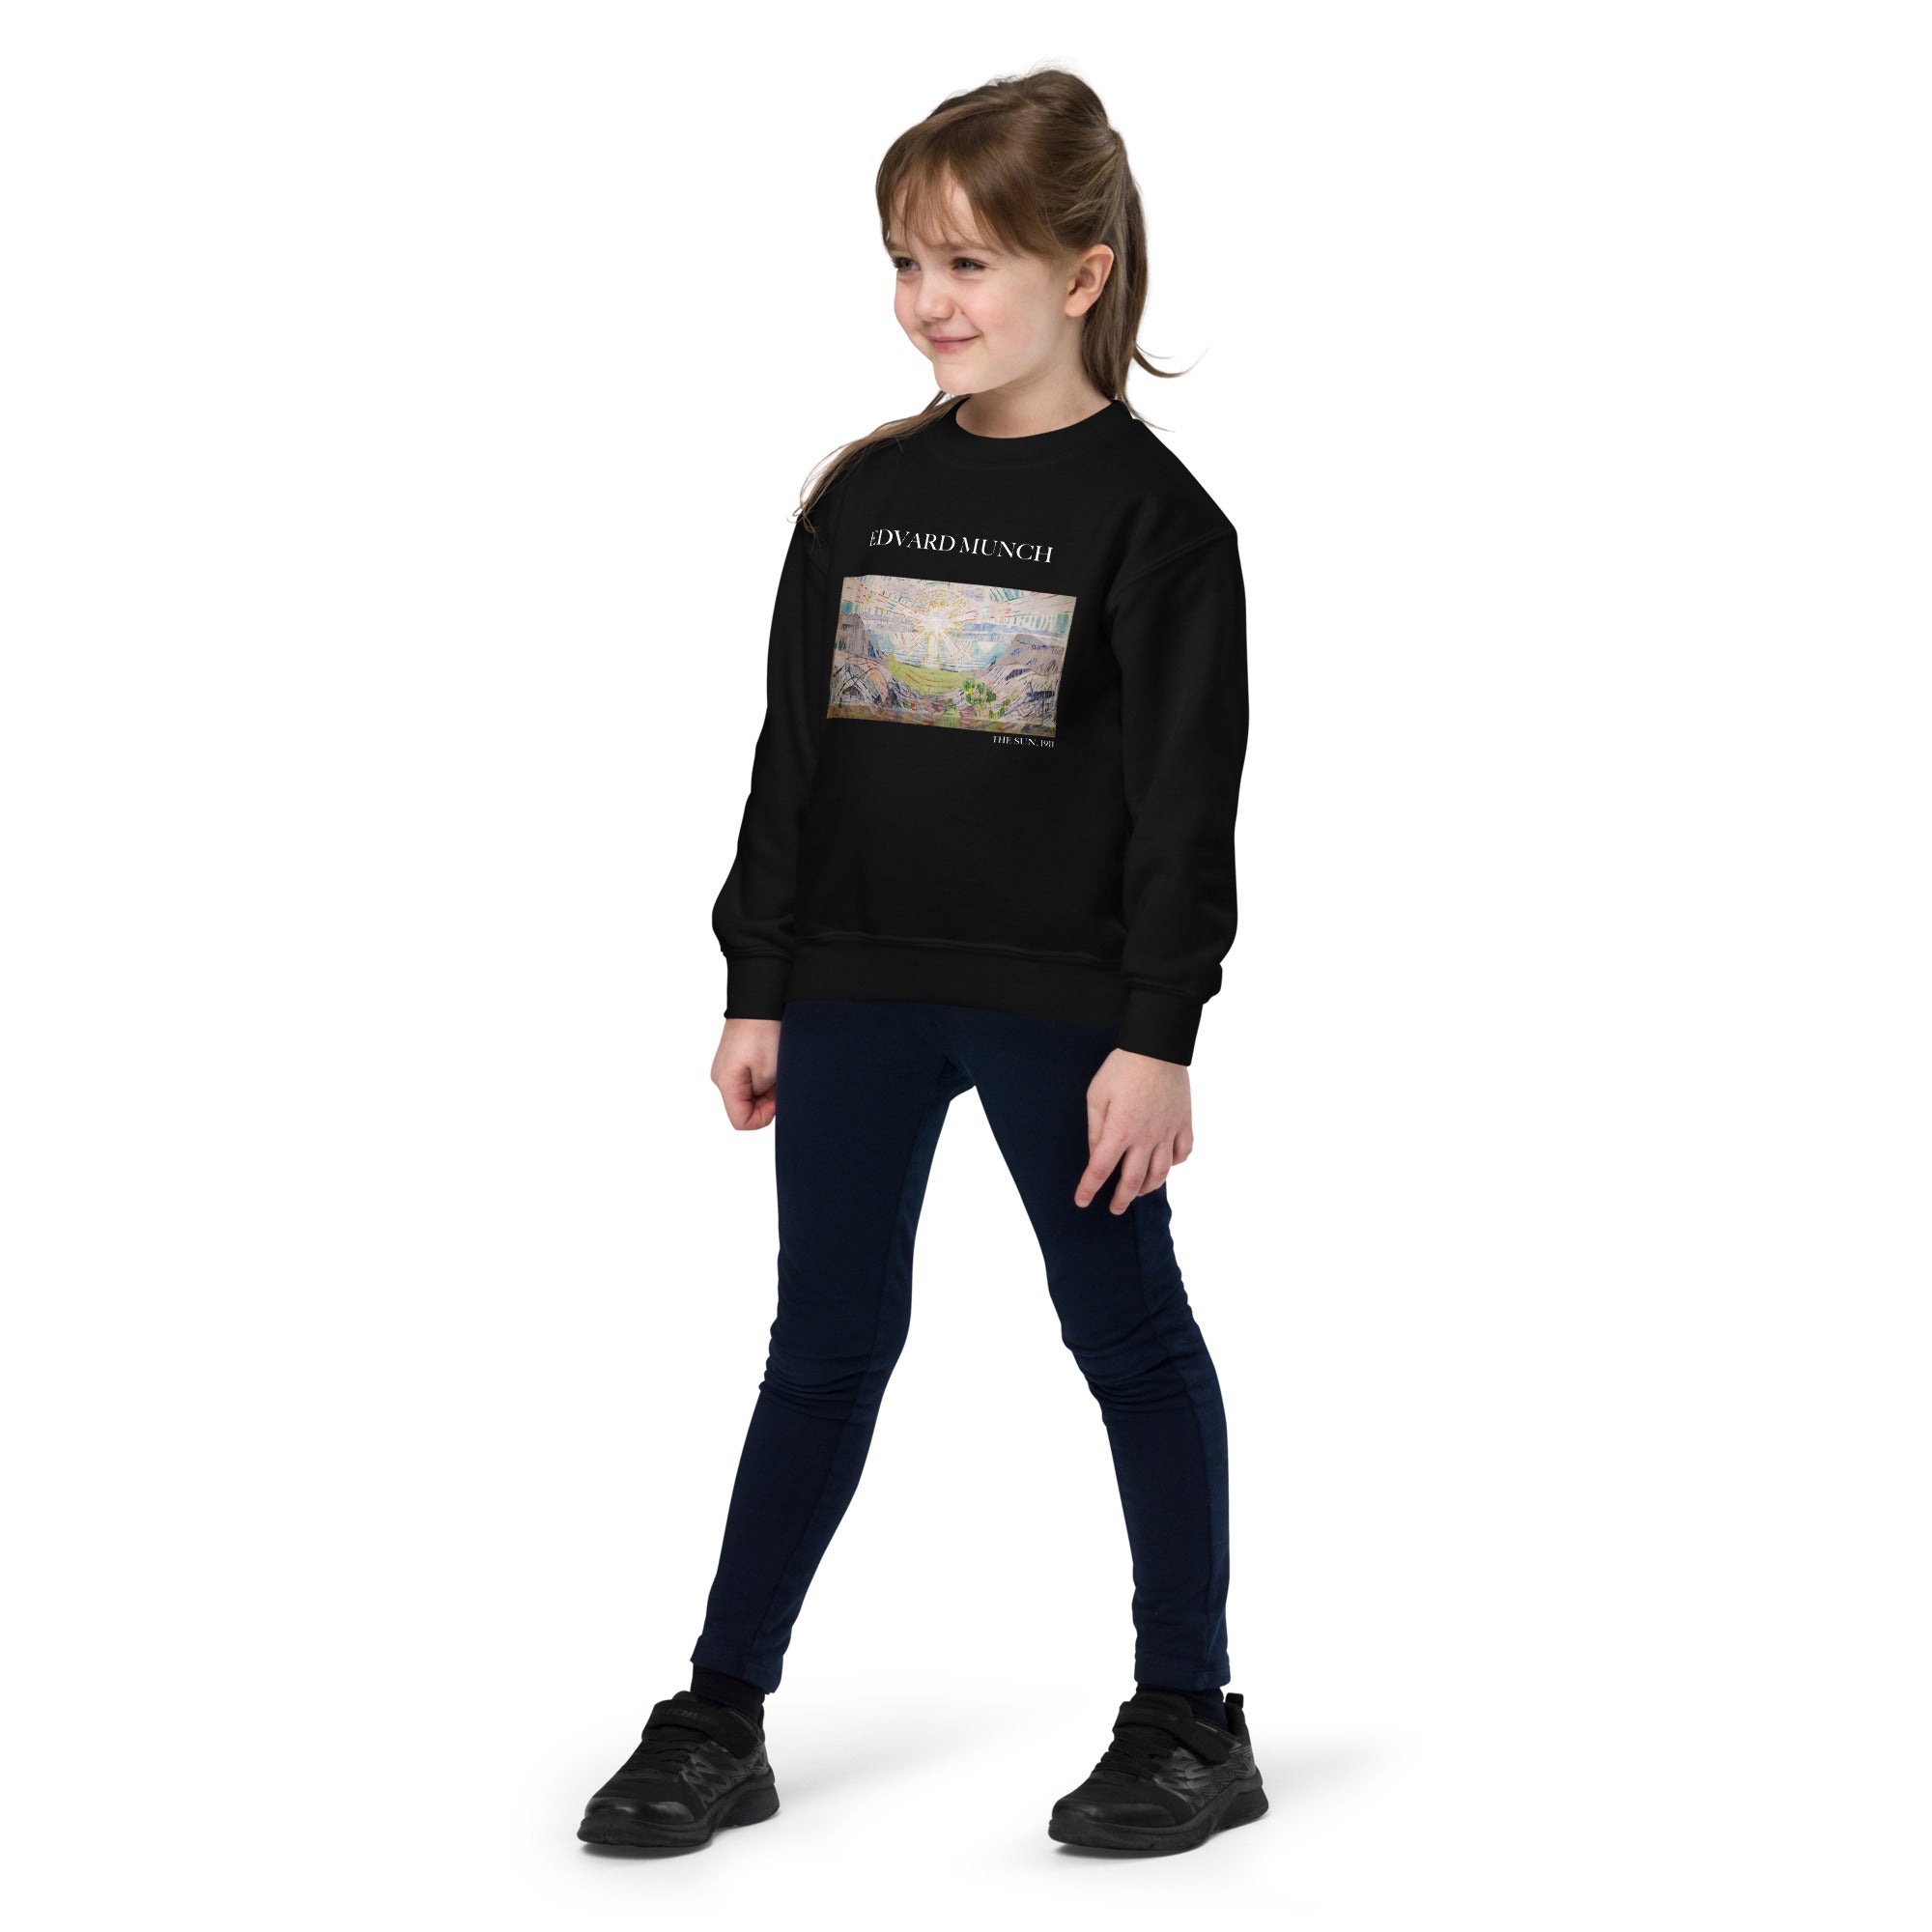 Edvard Munch „Die Sonne“ – berühmtes Gemälde – Rundhals-Sweatshirt | Premium-Kunst-Sweatshirt für Jugendliche